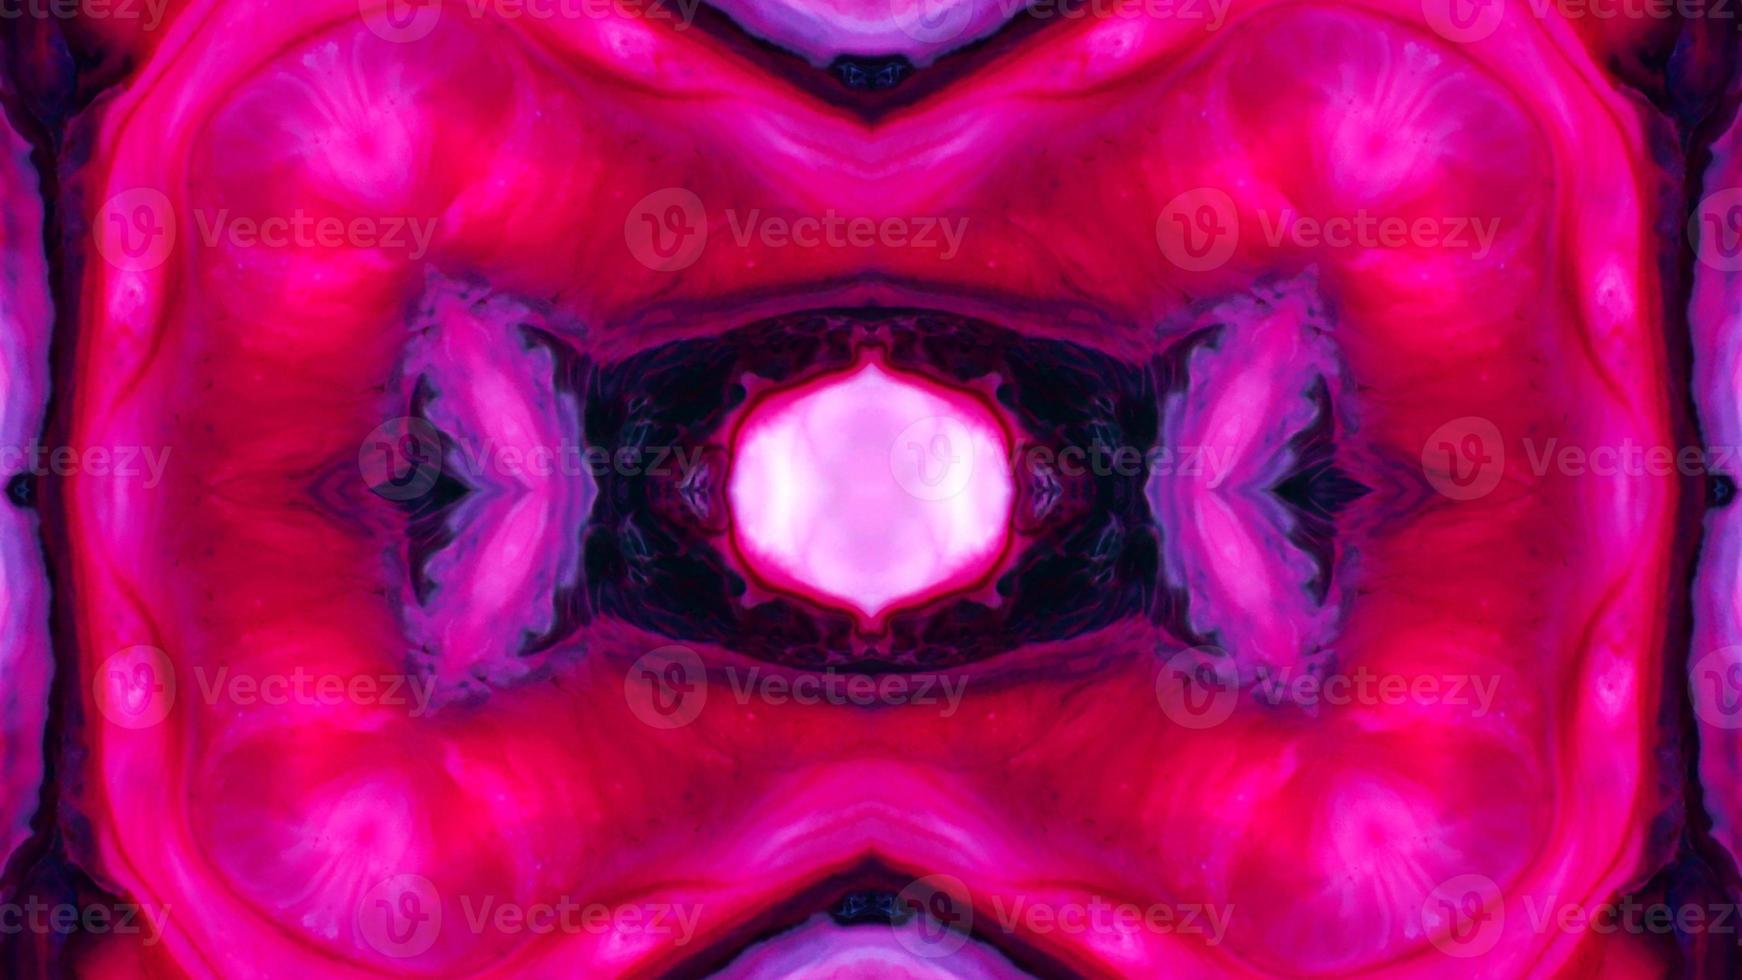 underbar kalejdoskop bakgrunder skapas från färgrik bläck måla spridning foto